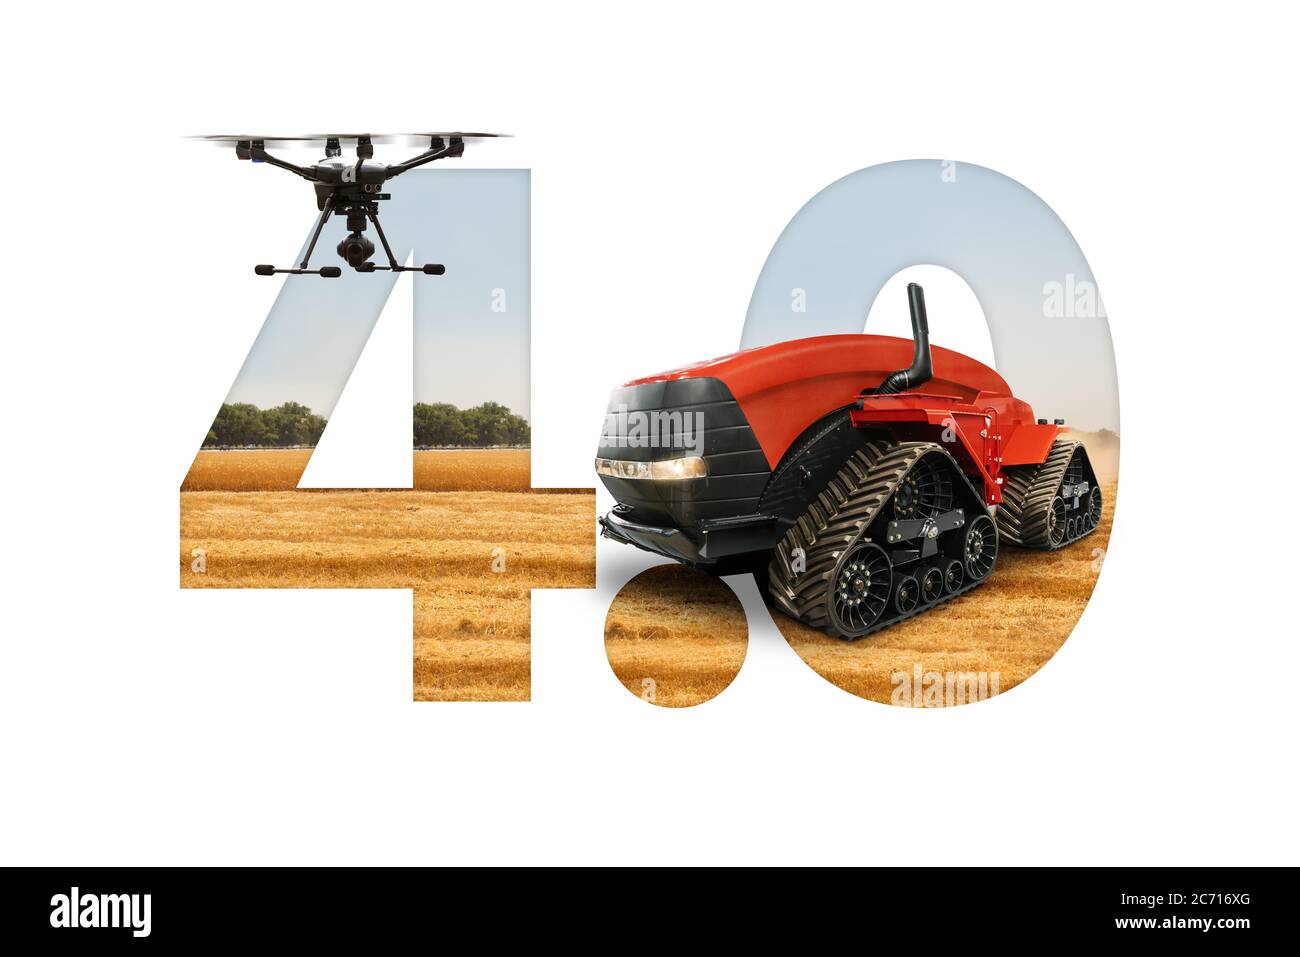 Trattore e drone autonomi sullo sfondo del testo 4.0. Concetto di agricoltura intelligente Foto Stock